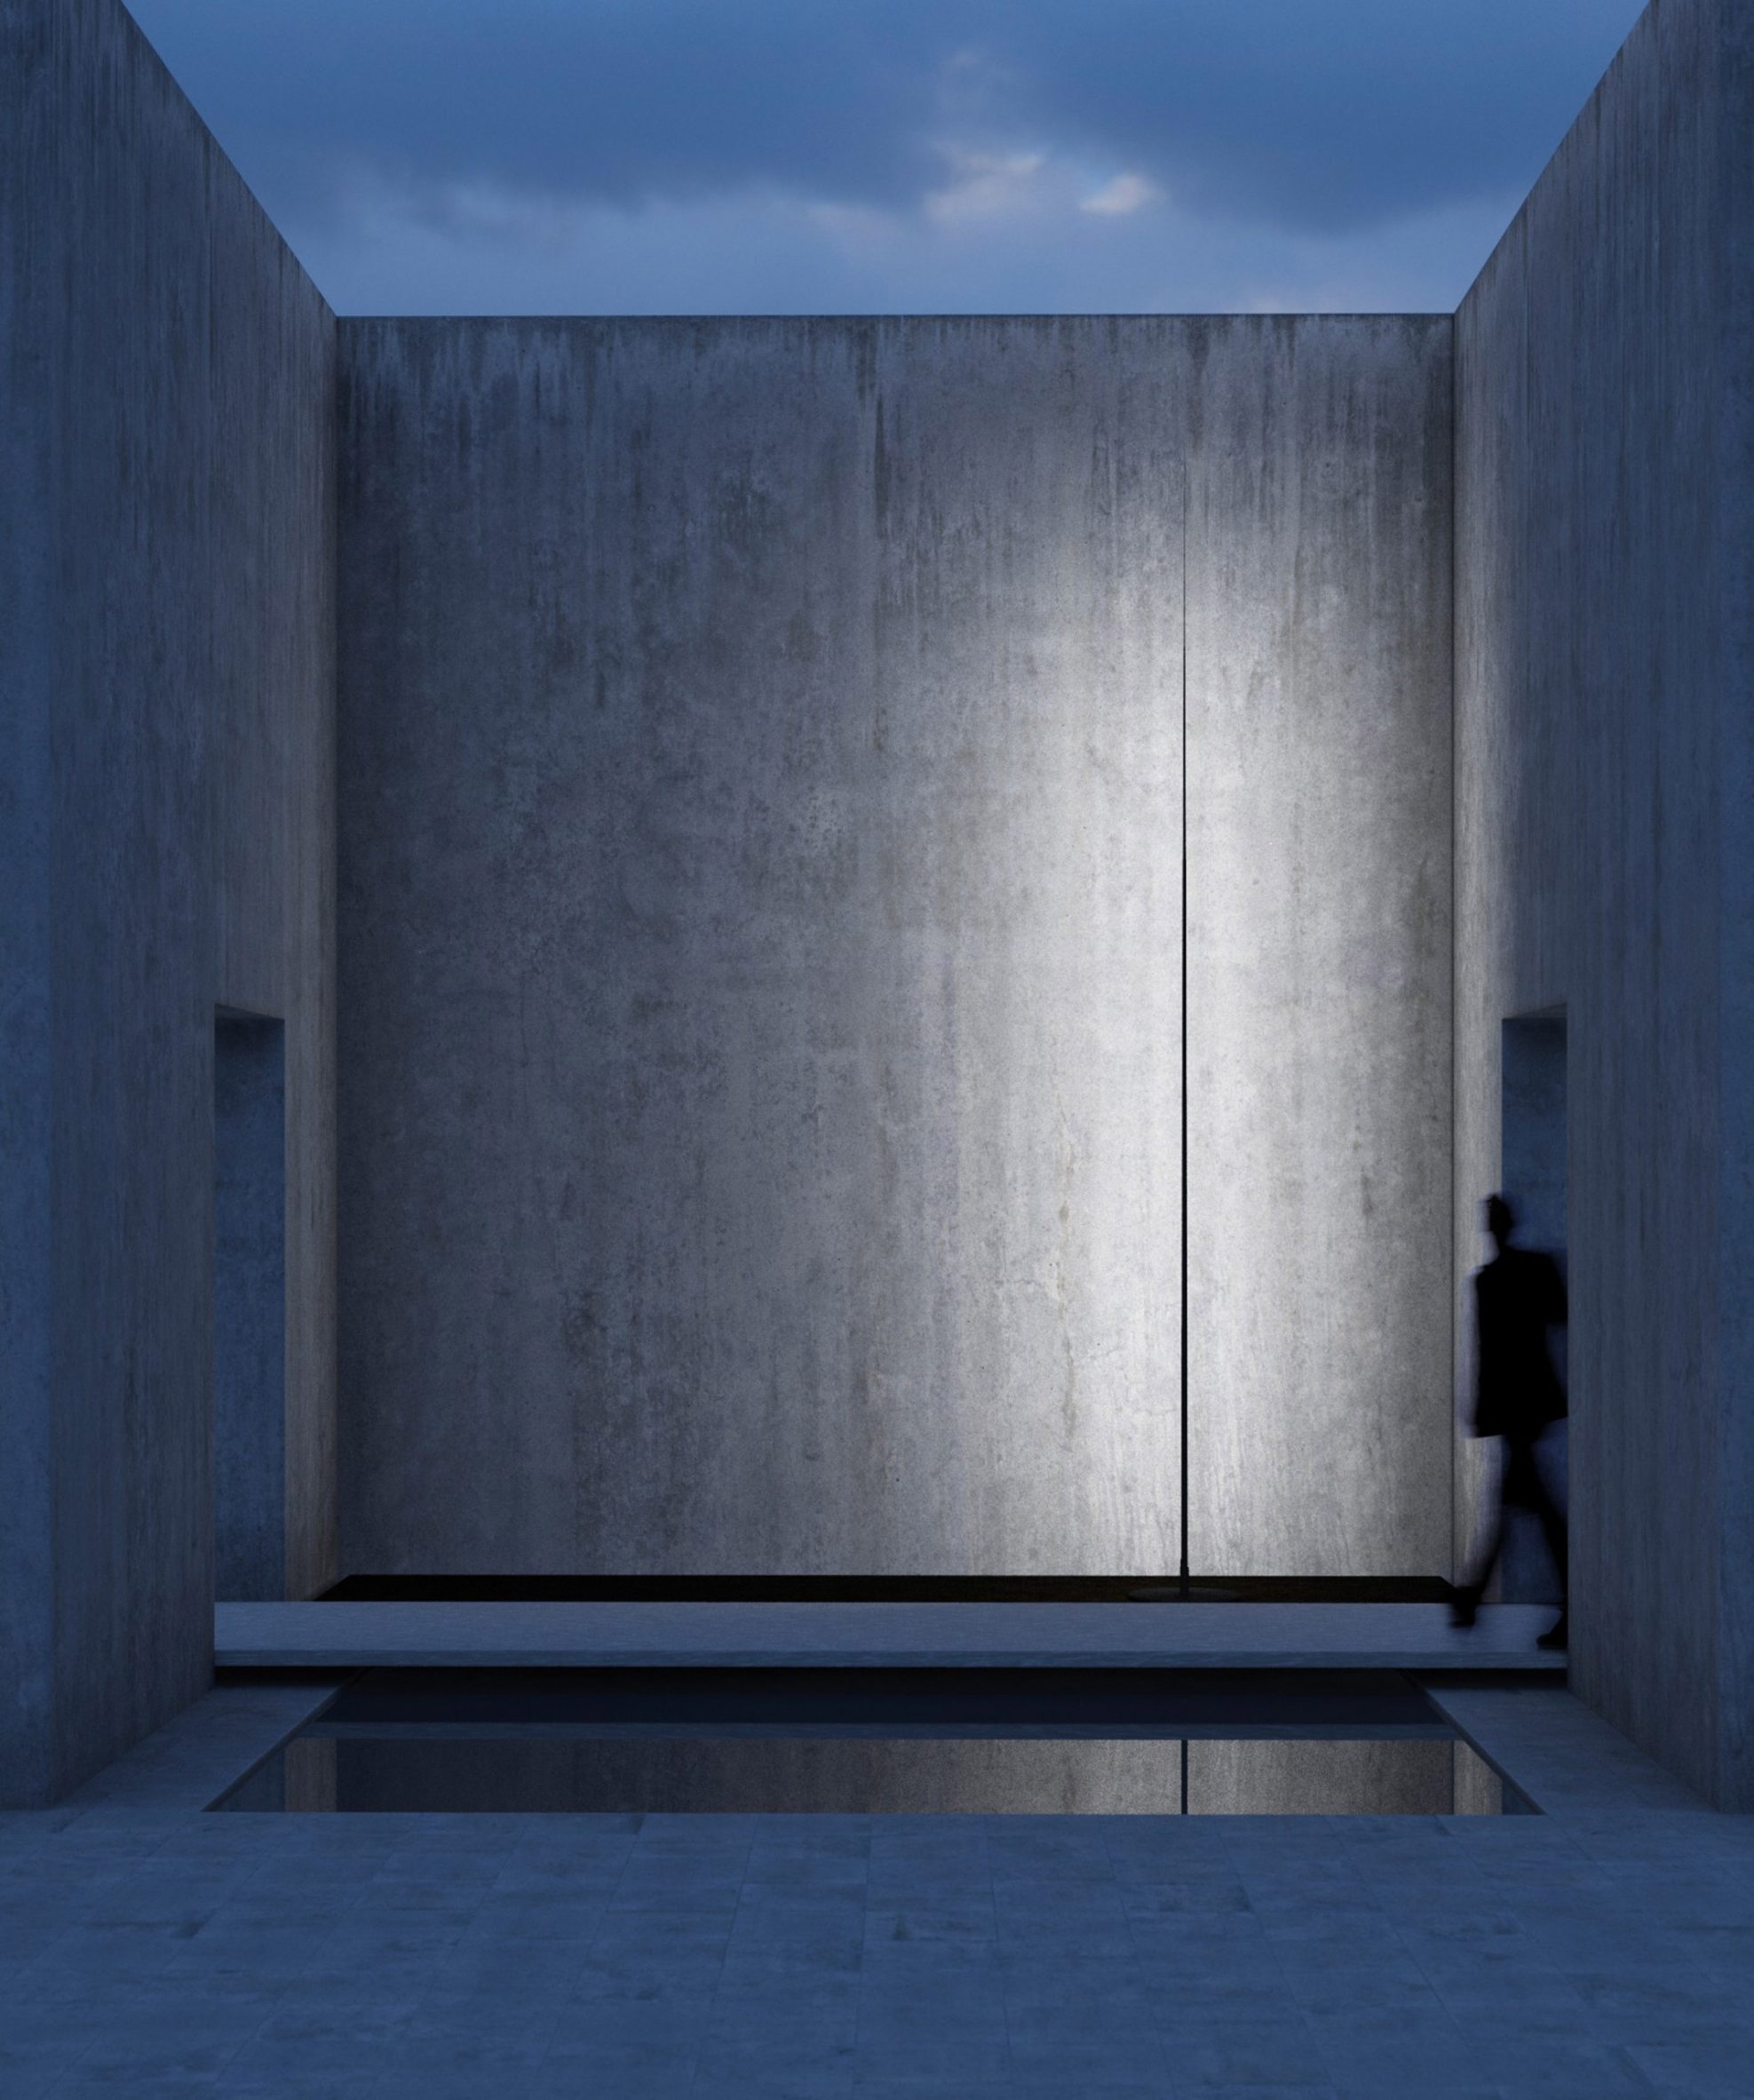 A photograph of the narrow matte black Origine light illuminating a concrete building